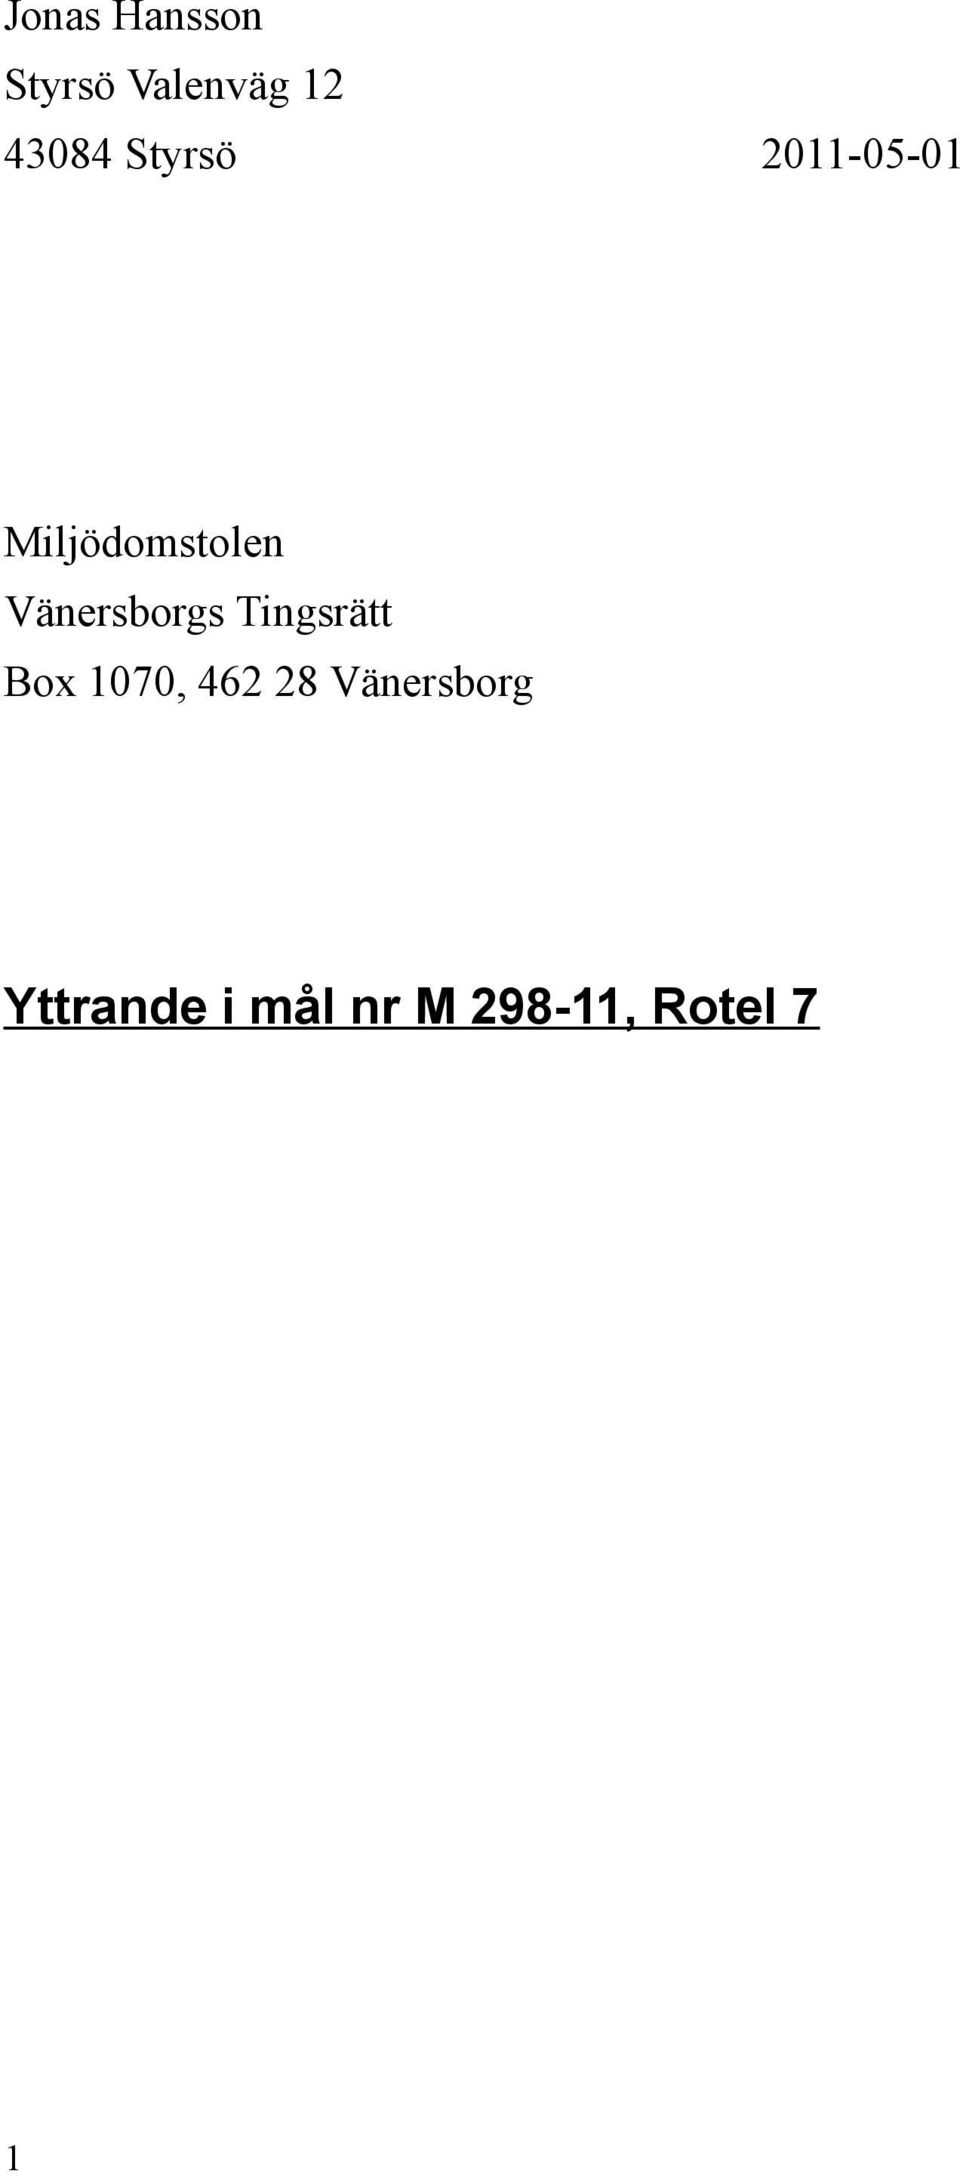 Vänersborgs Tingsrätt Box 1070, 462 28